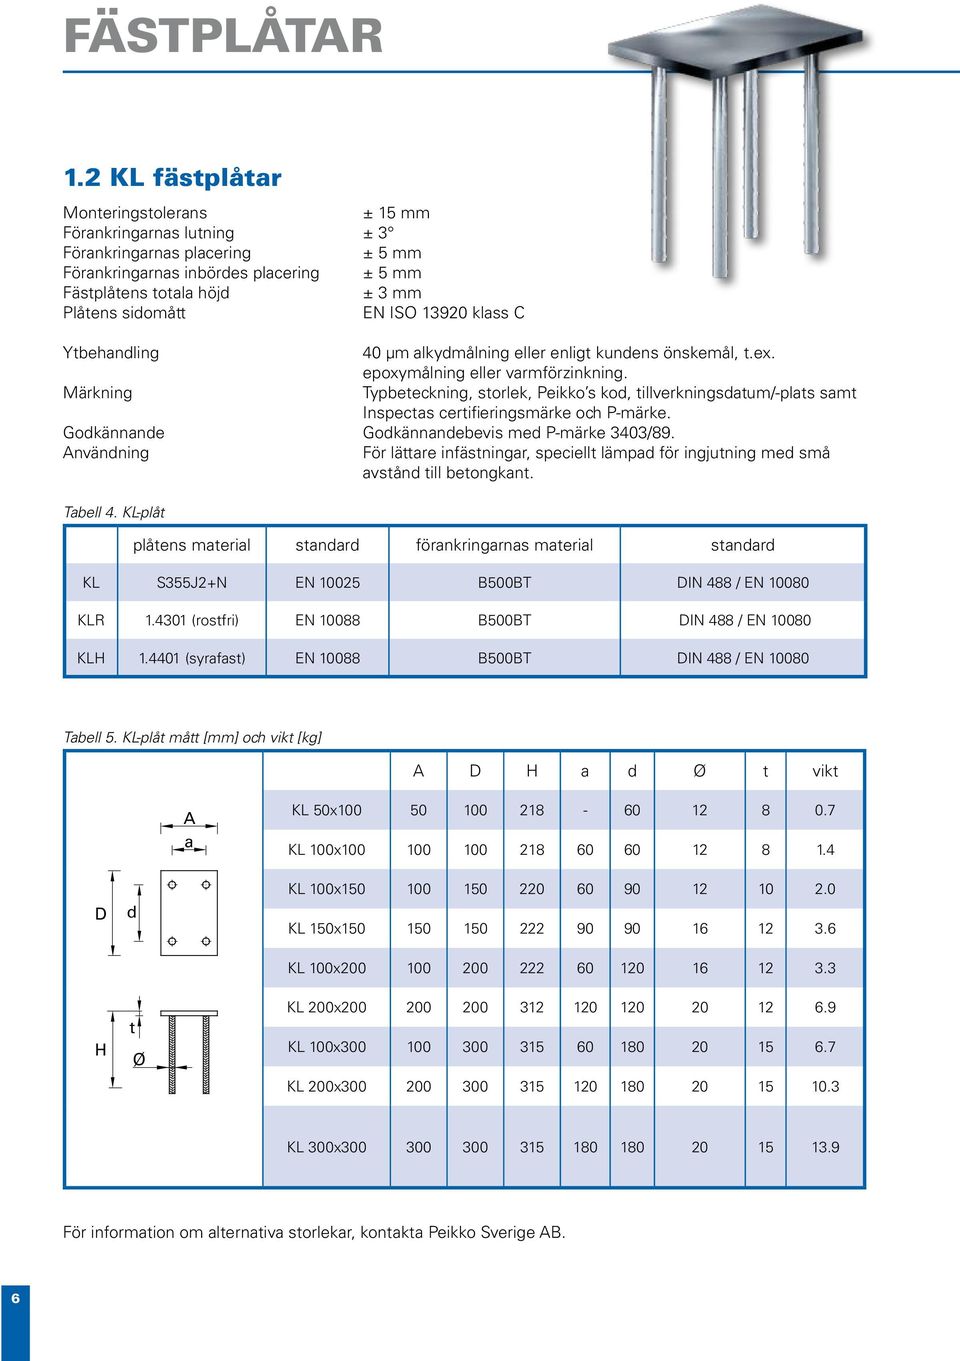 ISO 13920 klass C Ytbehandling 40 µm alkydmålning eller enligt kundens önskemål, t.ex. epoxymålning eller varmförzinkning.